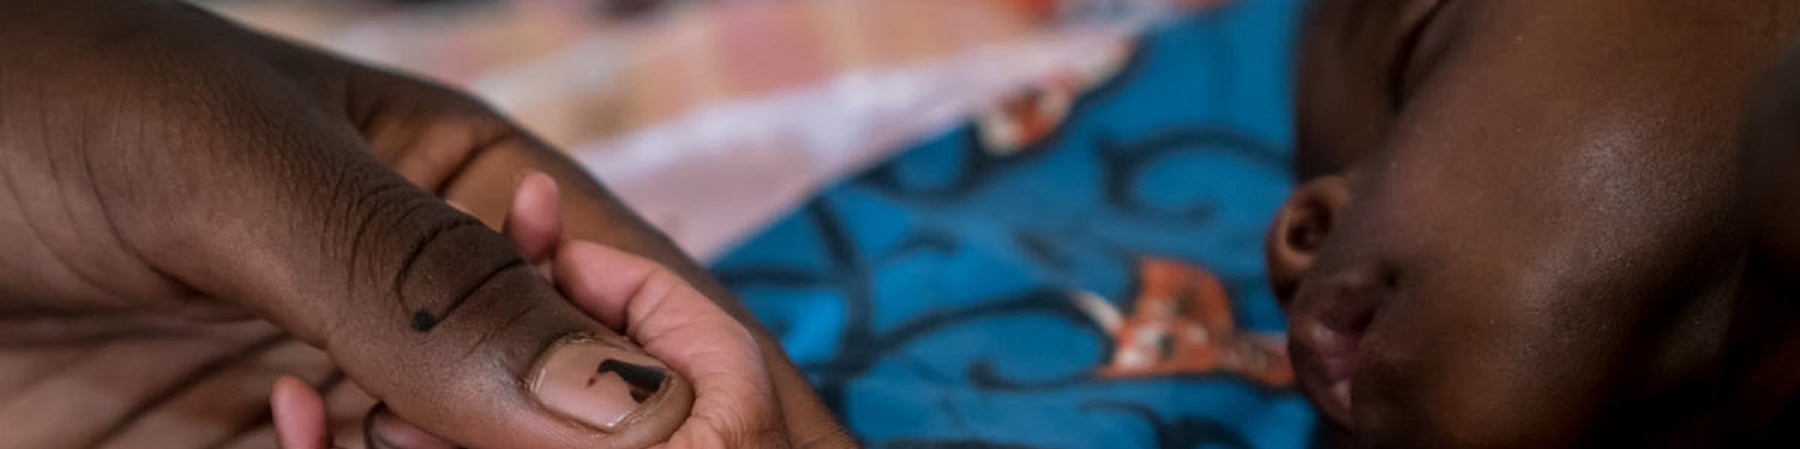 Bambino nigeriano affetto da malnutrizione acuta grave che dorme mentre una mano tiene teneramente la sua manina